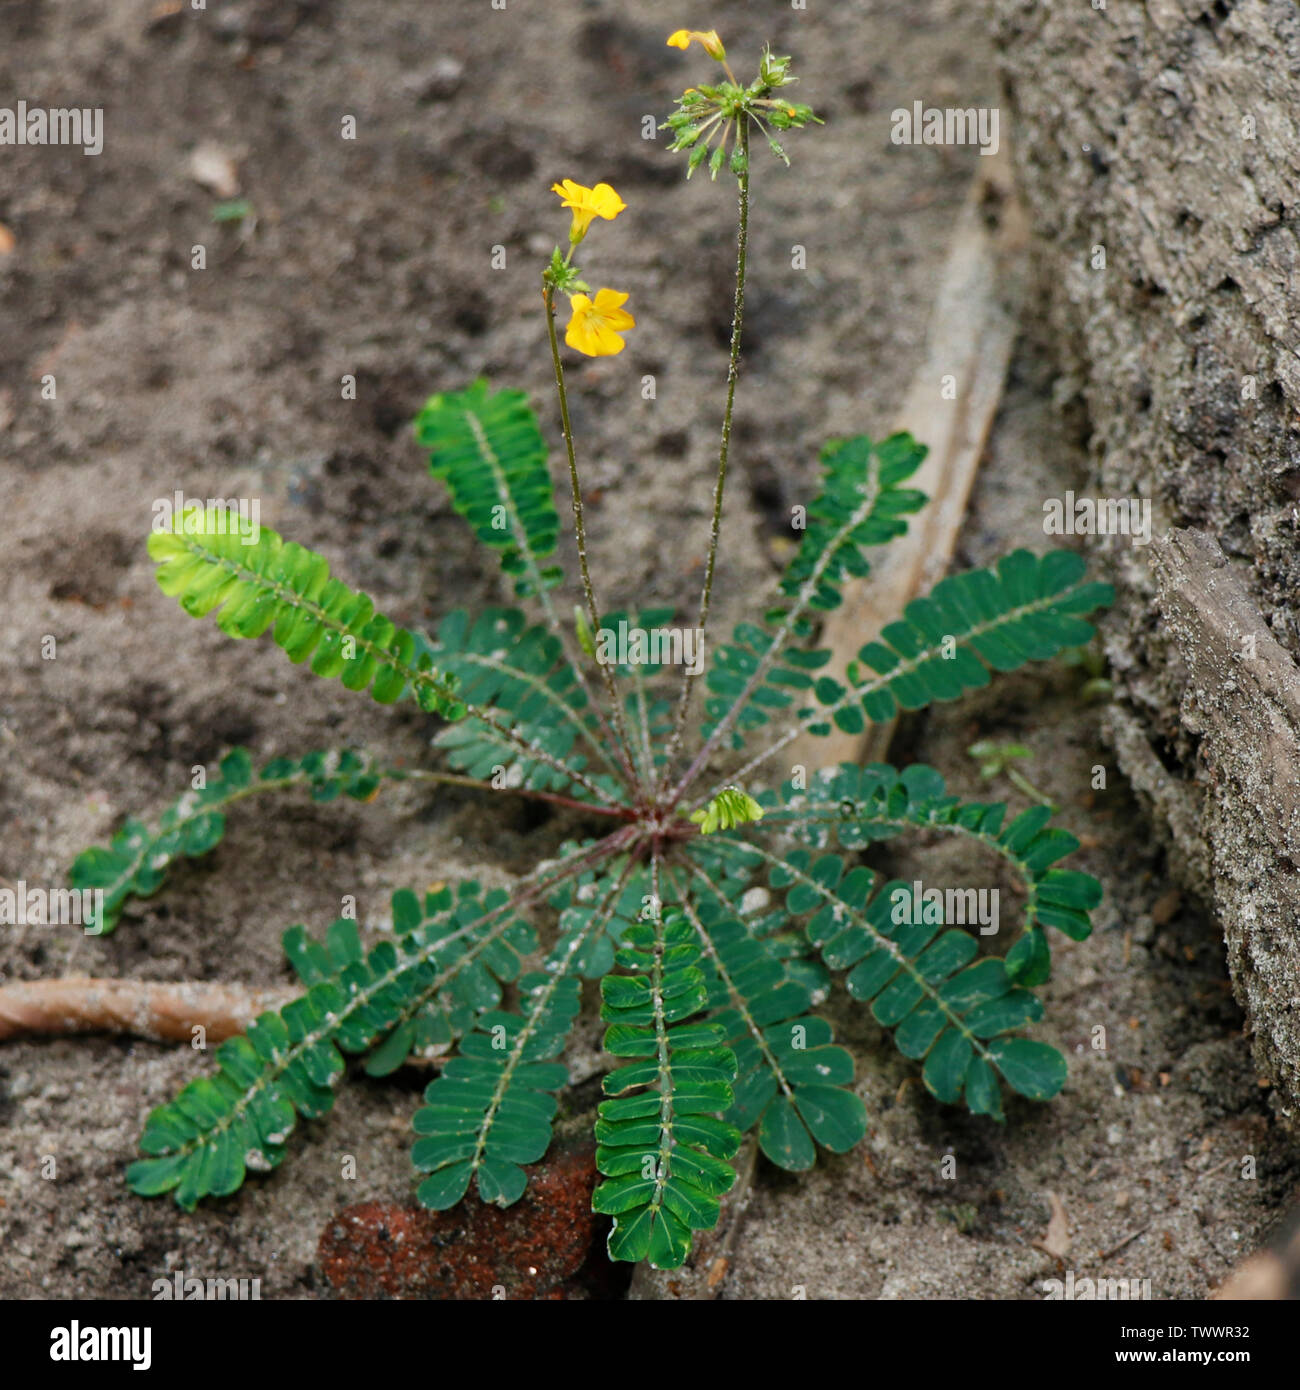 Biophytum sensitivum, également connu sous le petit arbre plante, est une espèce de plante de la famille Oxalidaceae et appartient au genre Biophytum. Banque D'Images